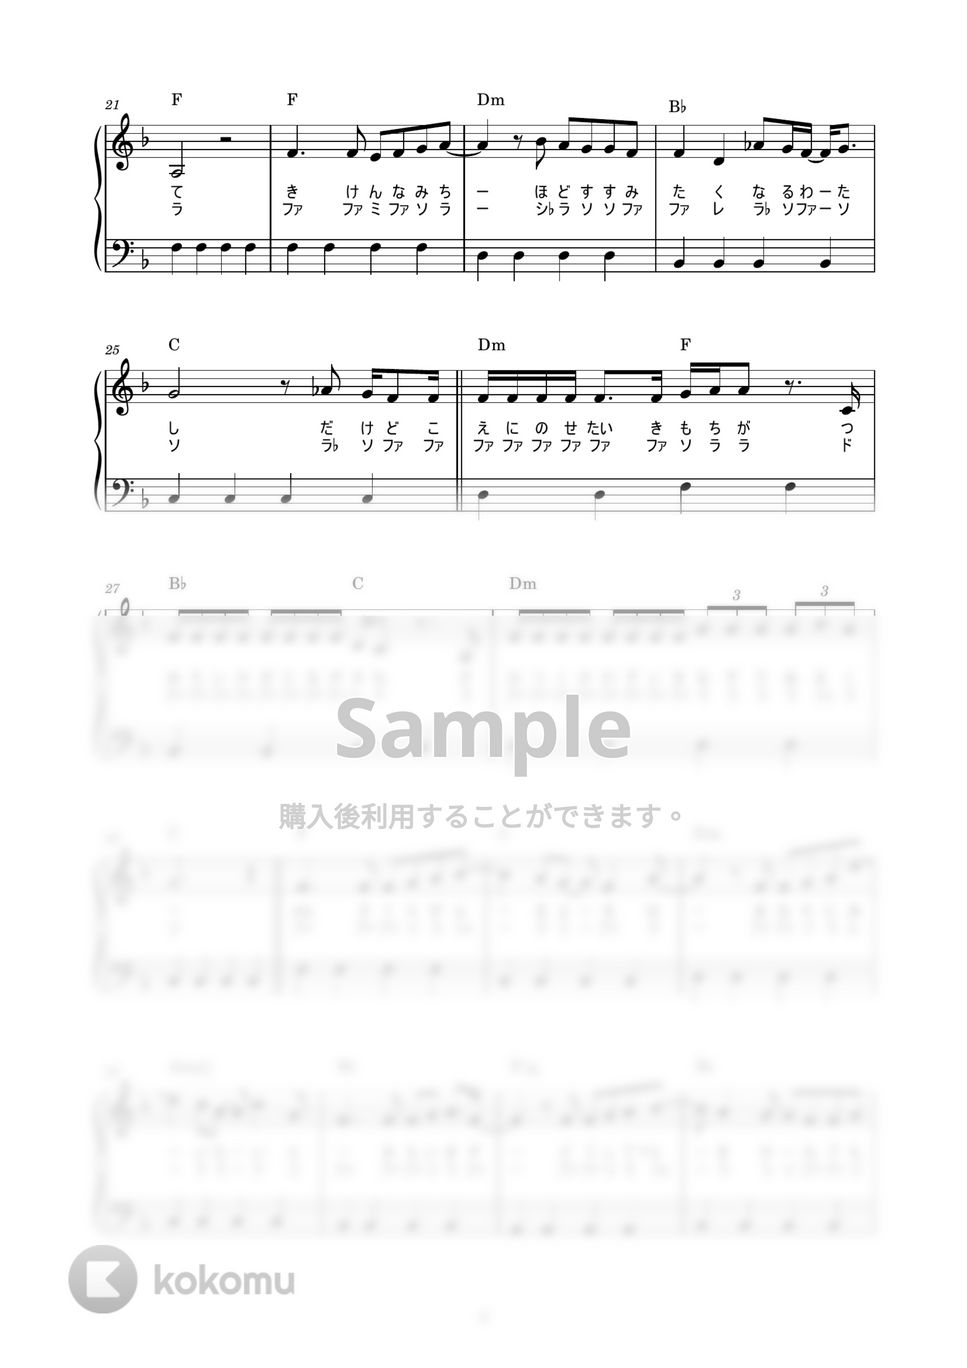 あいみょん - 桜が降る夜は (かんたん / 歌詞付き / ドレミ付き / 初心者) by piano.tokyo